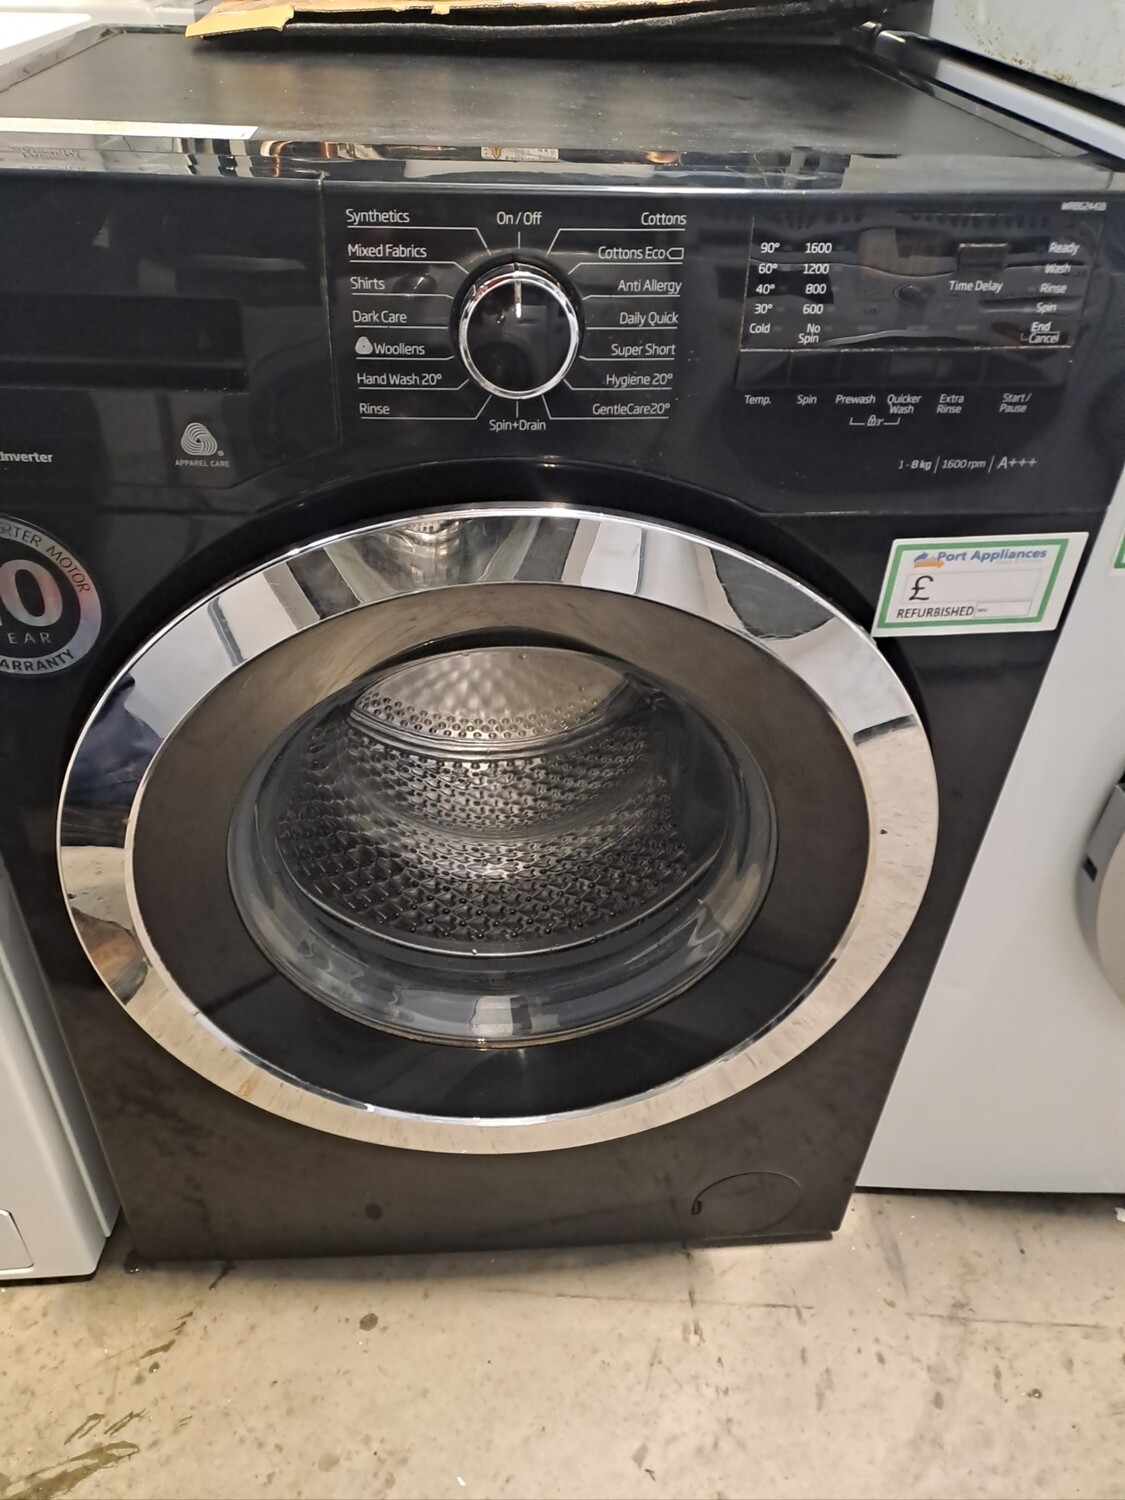 Beko WR862441B 8kg Load 1400 Spin Washing Machine - Black - Refurbished - 6 Month Guarantee